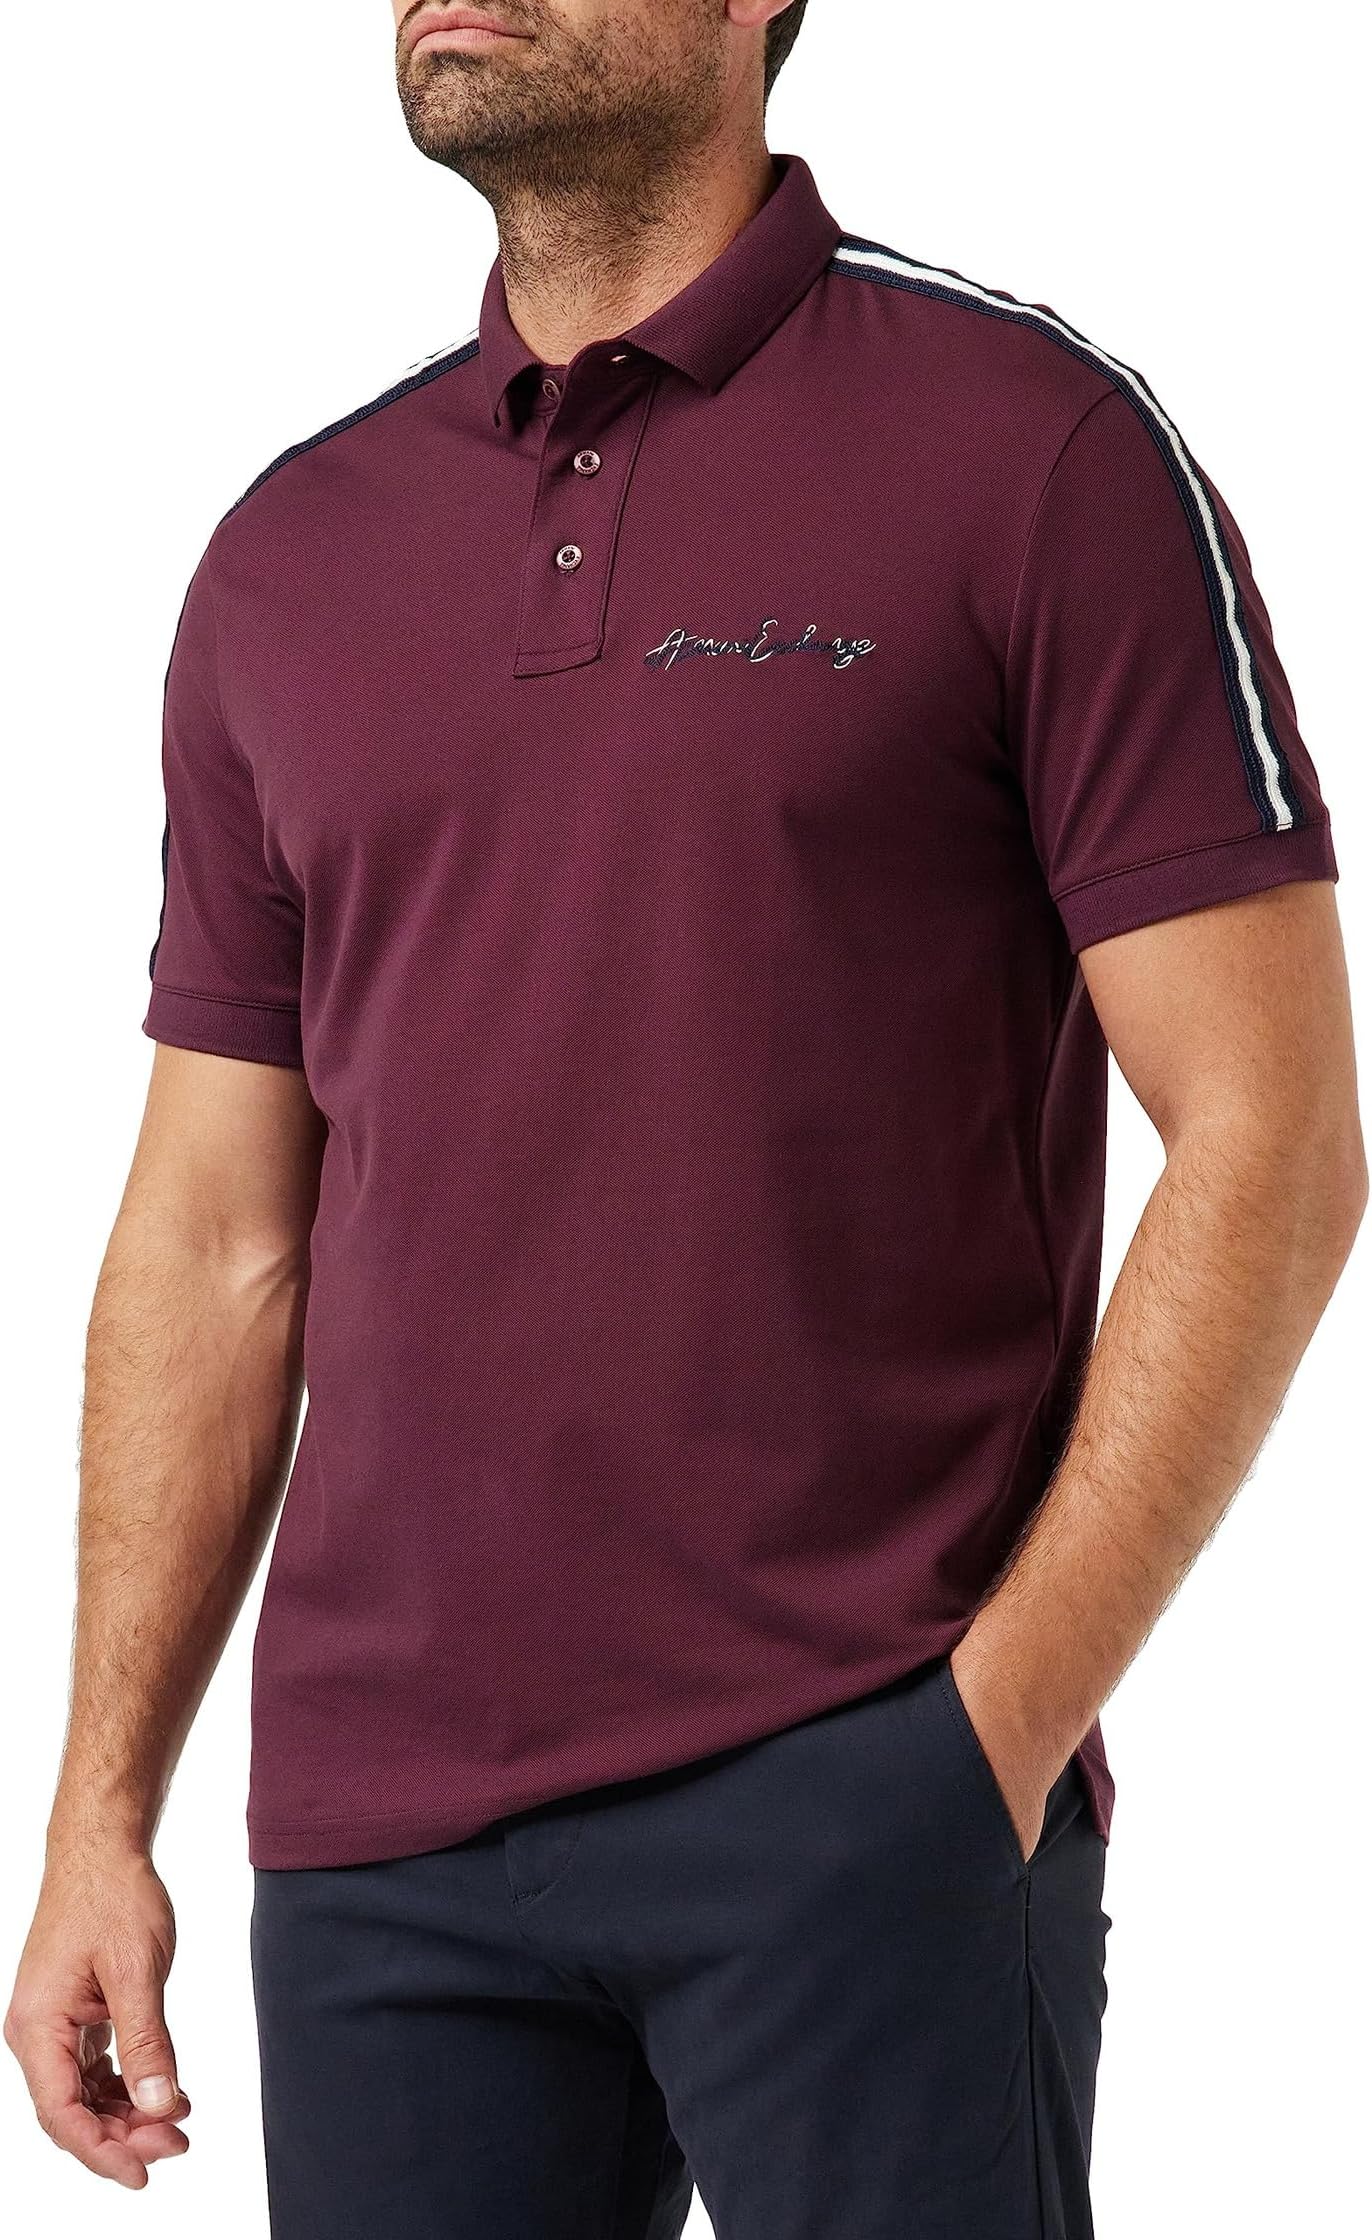 рубашка поло cotton printed polo shirt armani exchange цвет black ued triangle Рубашка-поло Piquet Polo Shirt Armani Exchange, цвет Winetasting